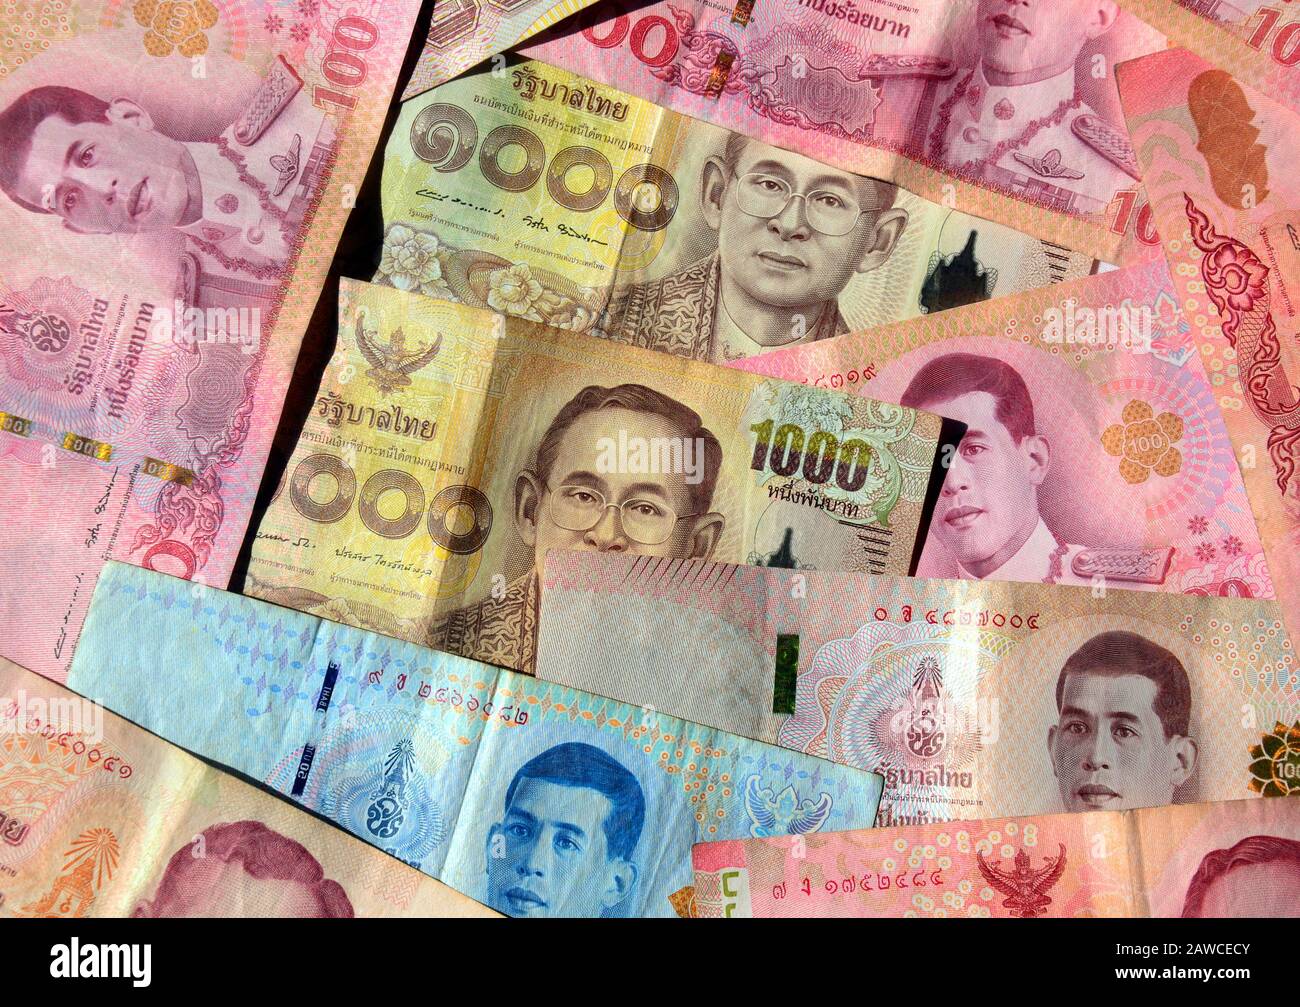 Una veduta aerea di una collezione di banconote thailandesi che mostrano gli attuali e gli ultimi Re di quel paese Foto Stock